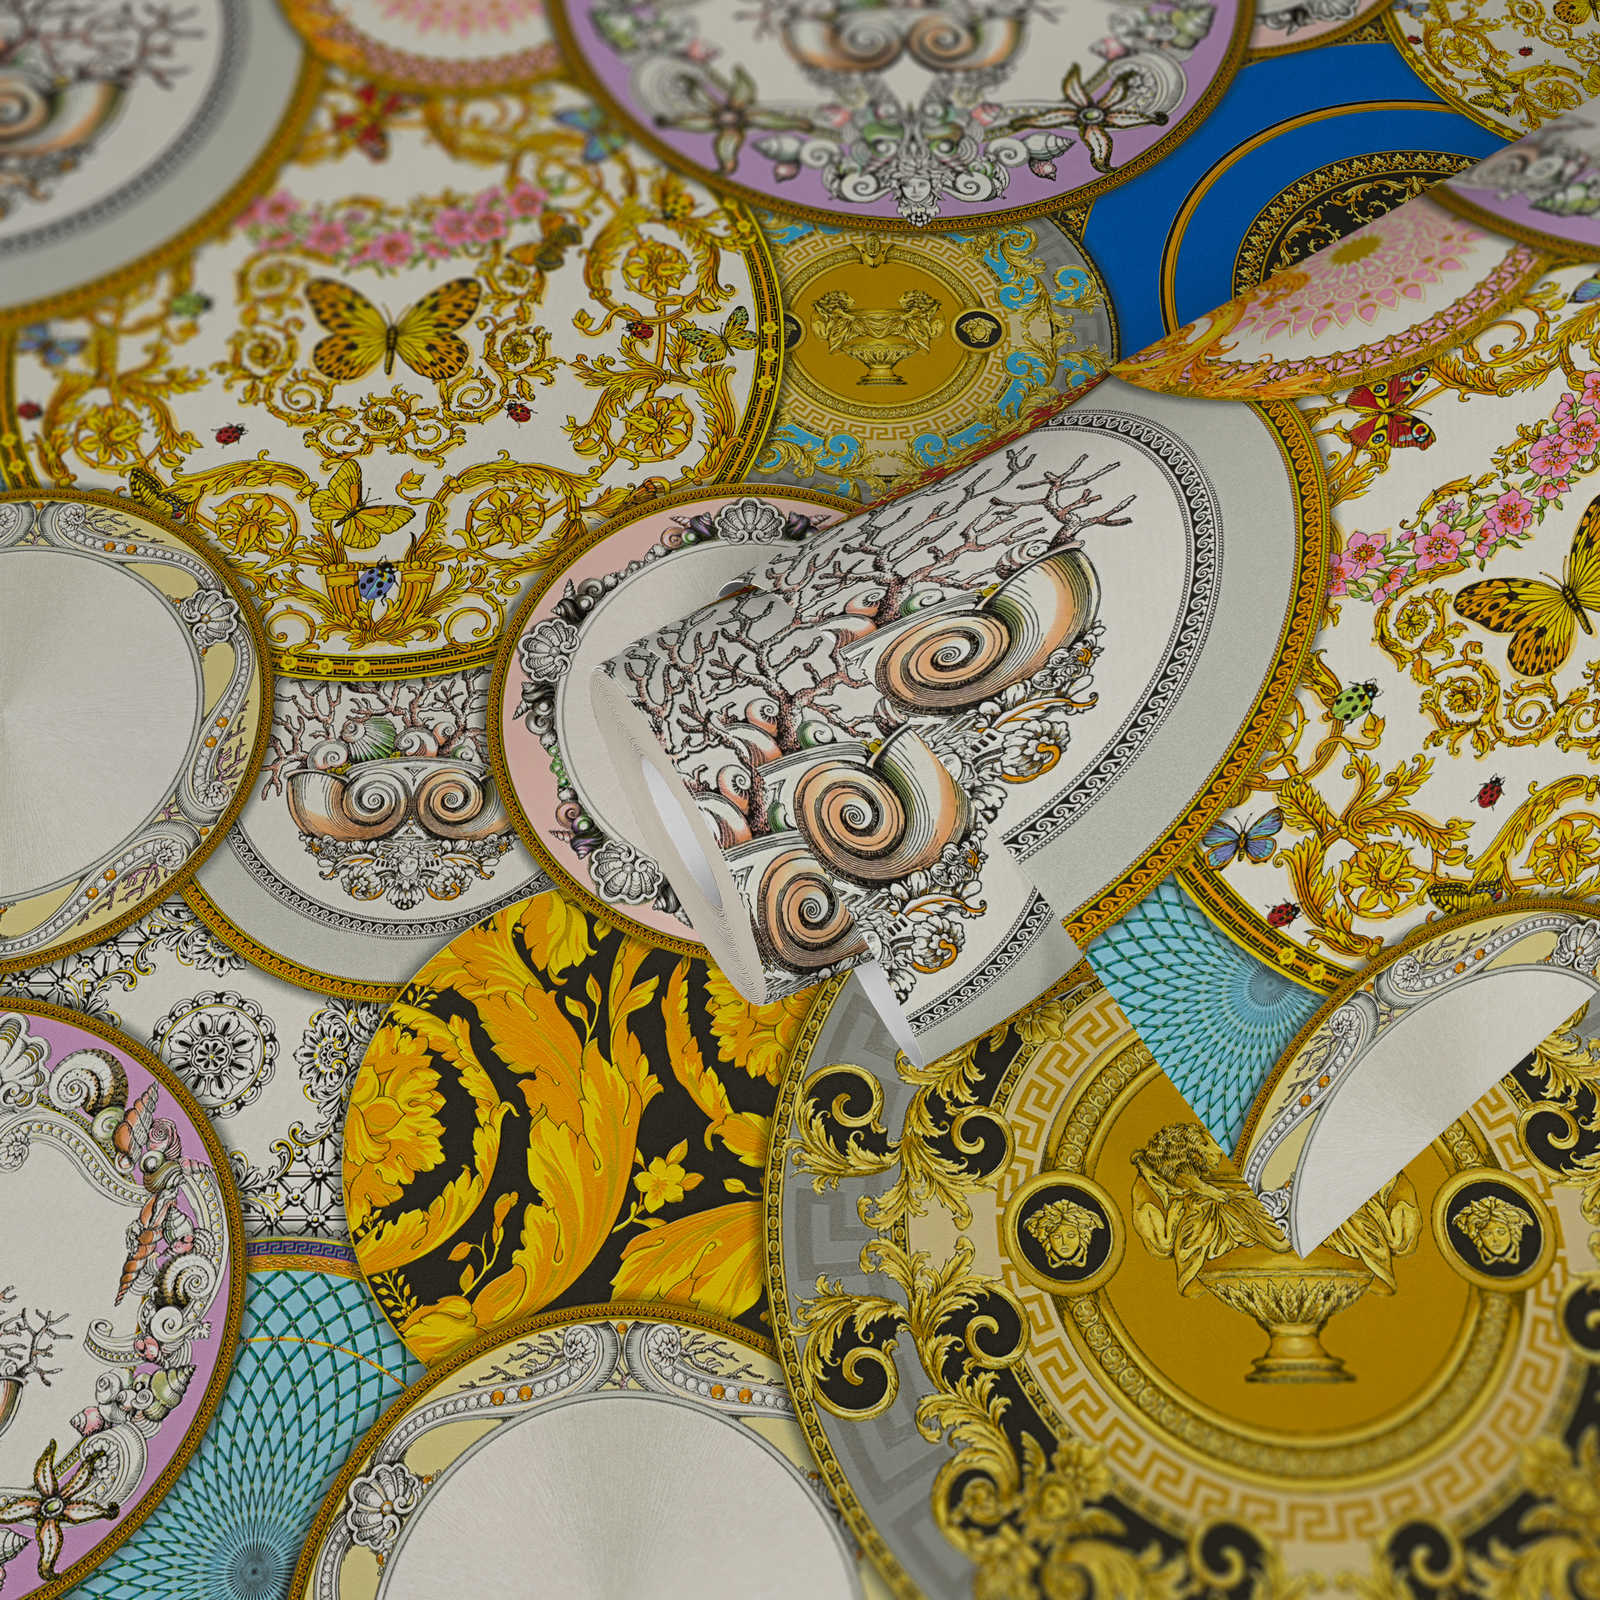             Papel pintado VERSACE con diseño de medallas y efecto dorado - multicolor, metálico
        